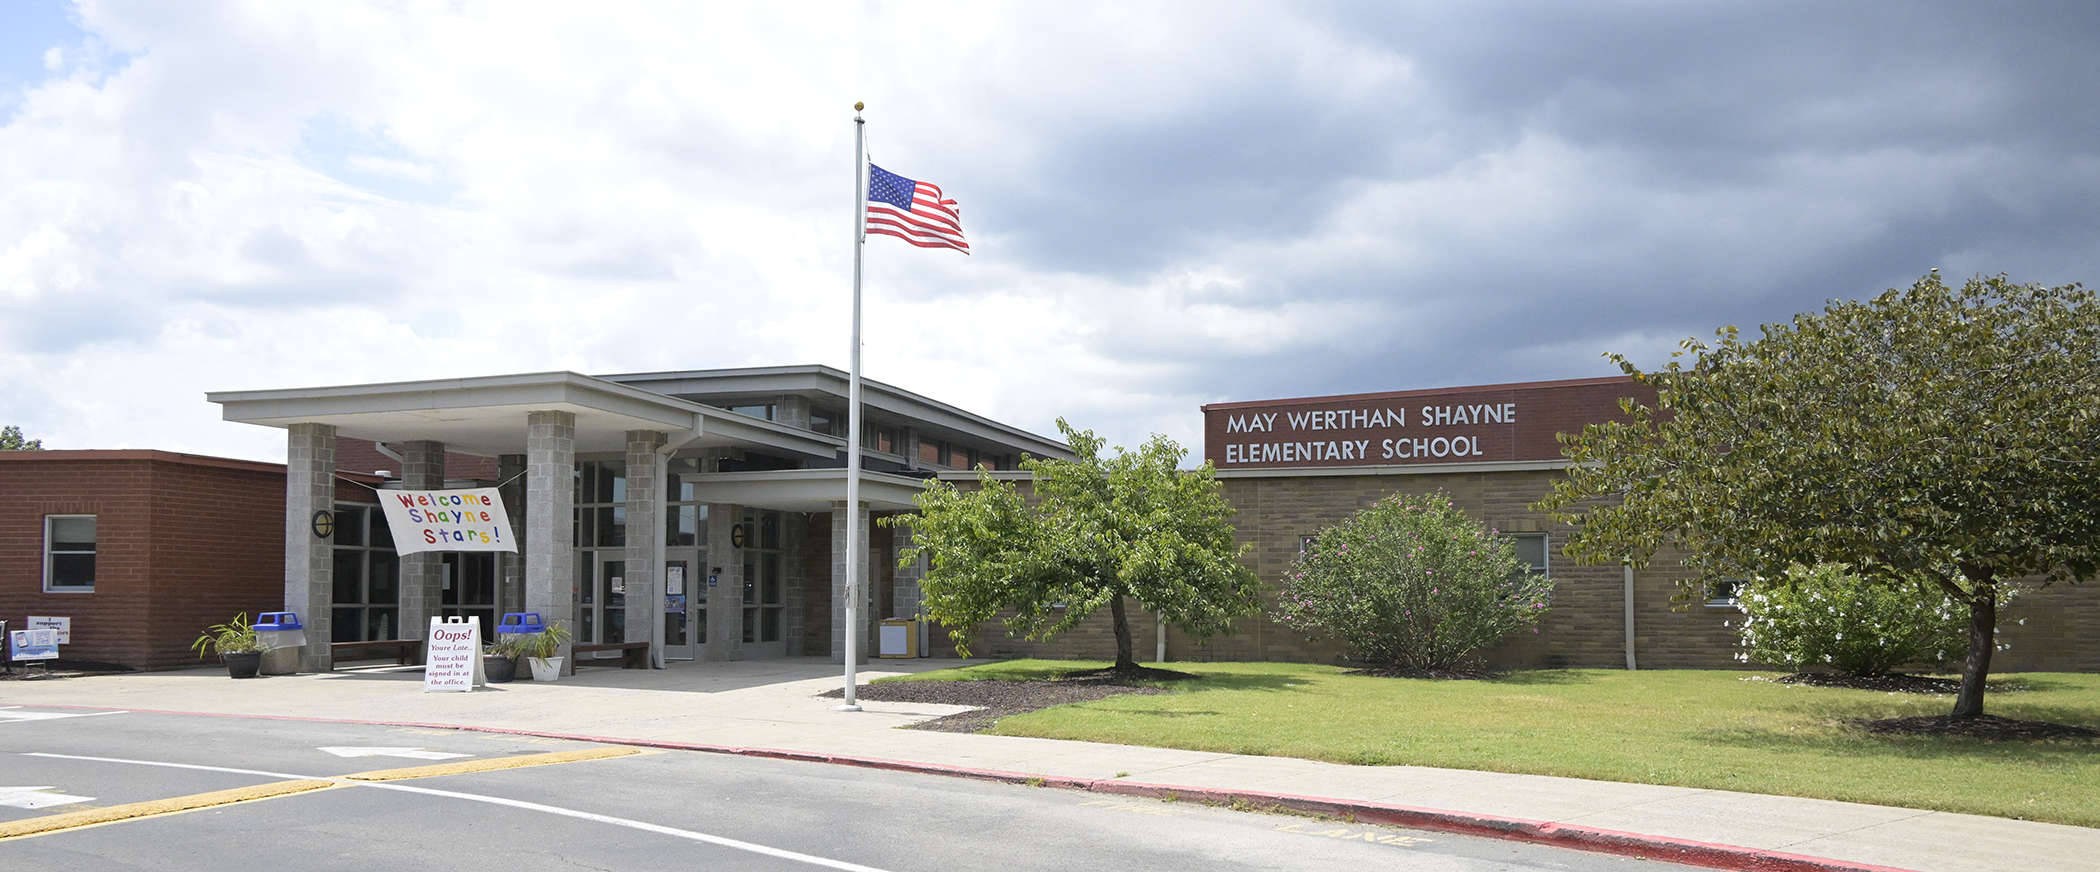 May Werthan Shayne Elementary School